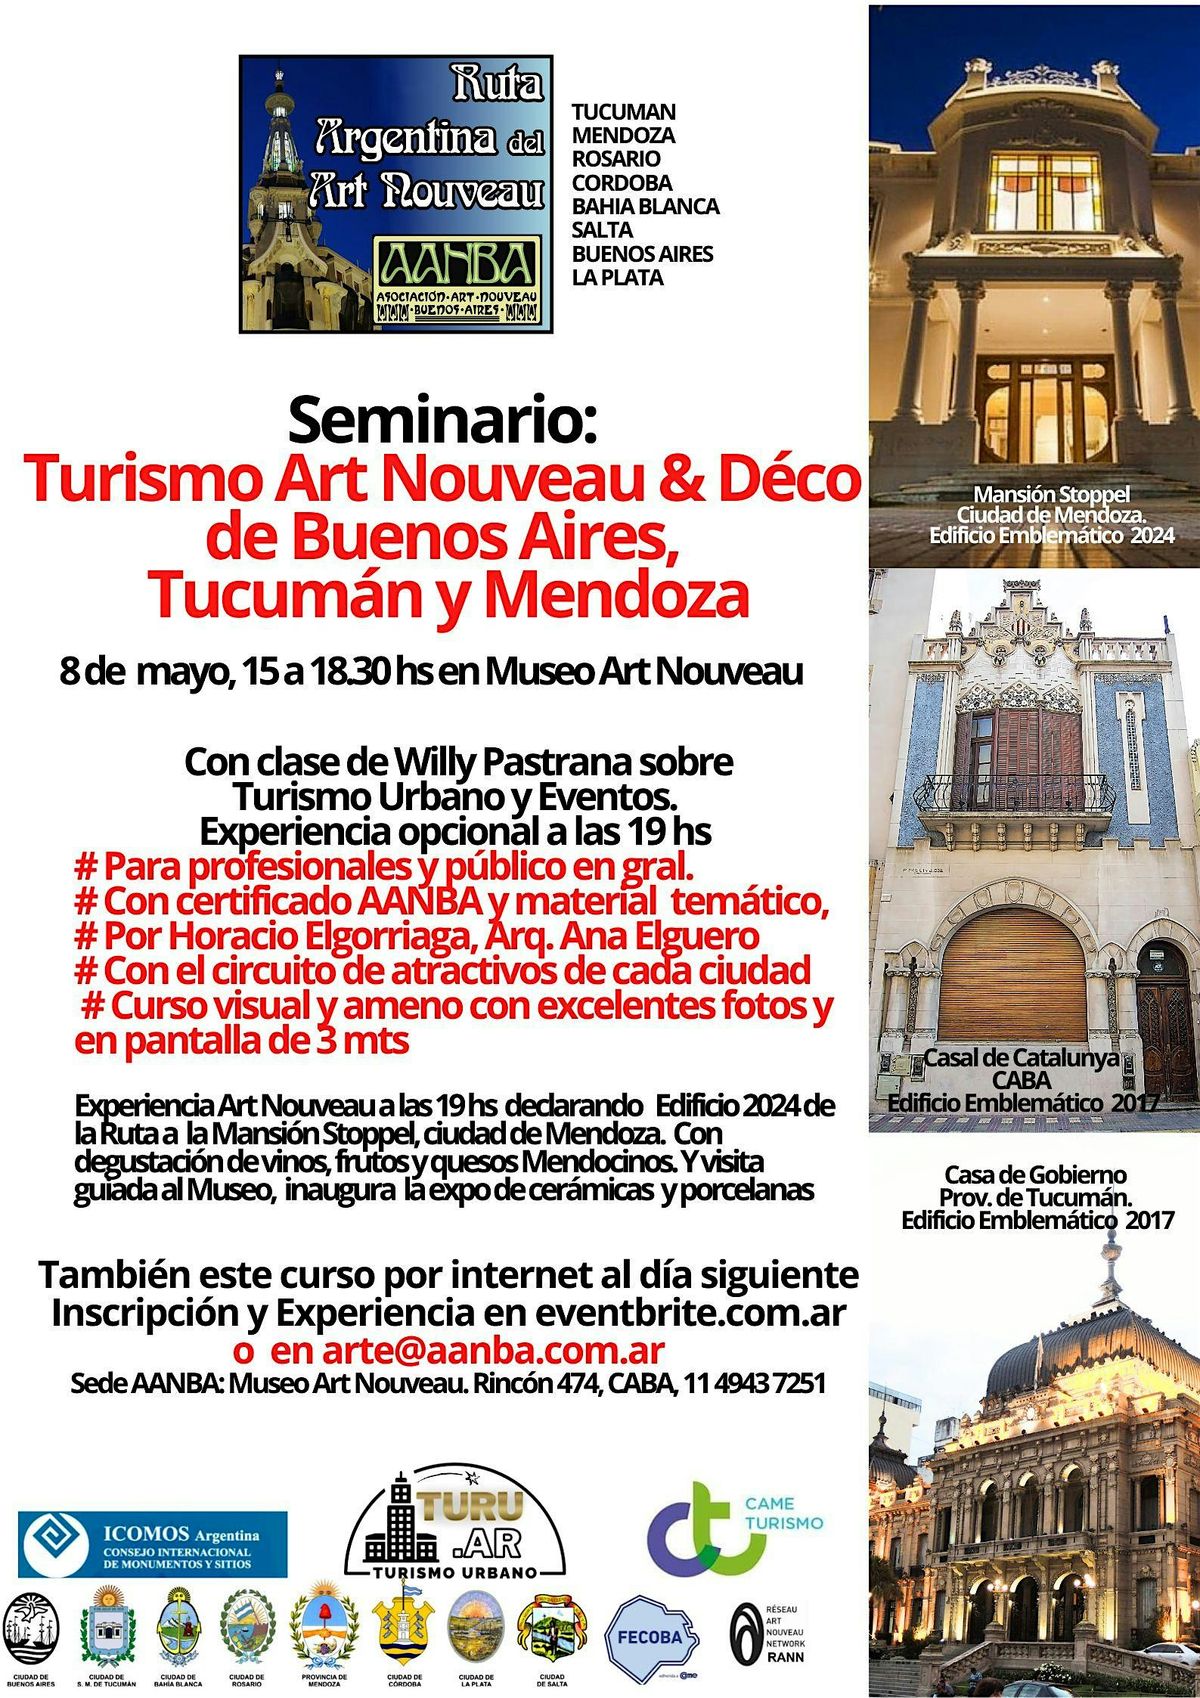 Seminario AANBA de Art Nouveau y D\u00e9co Buenos Aires, Tucum\u00e1n, Mendoza  con evento tem\u00e1tico